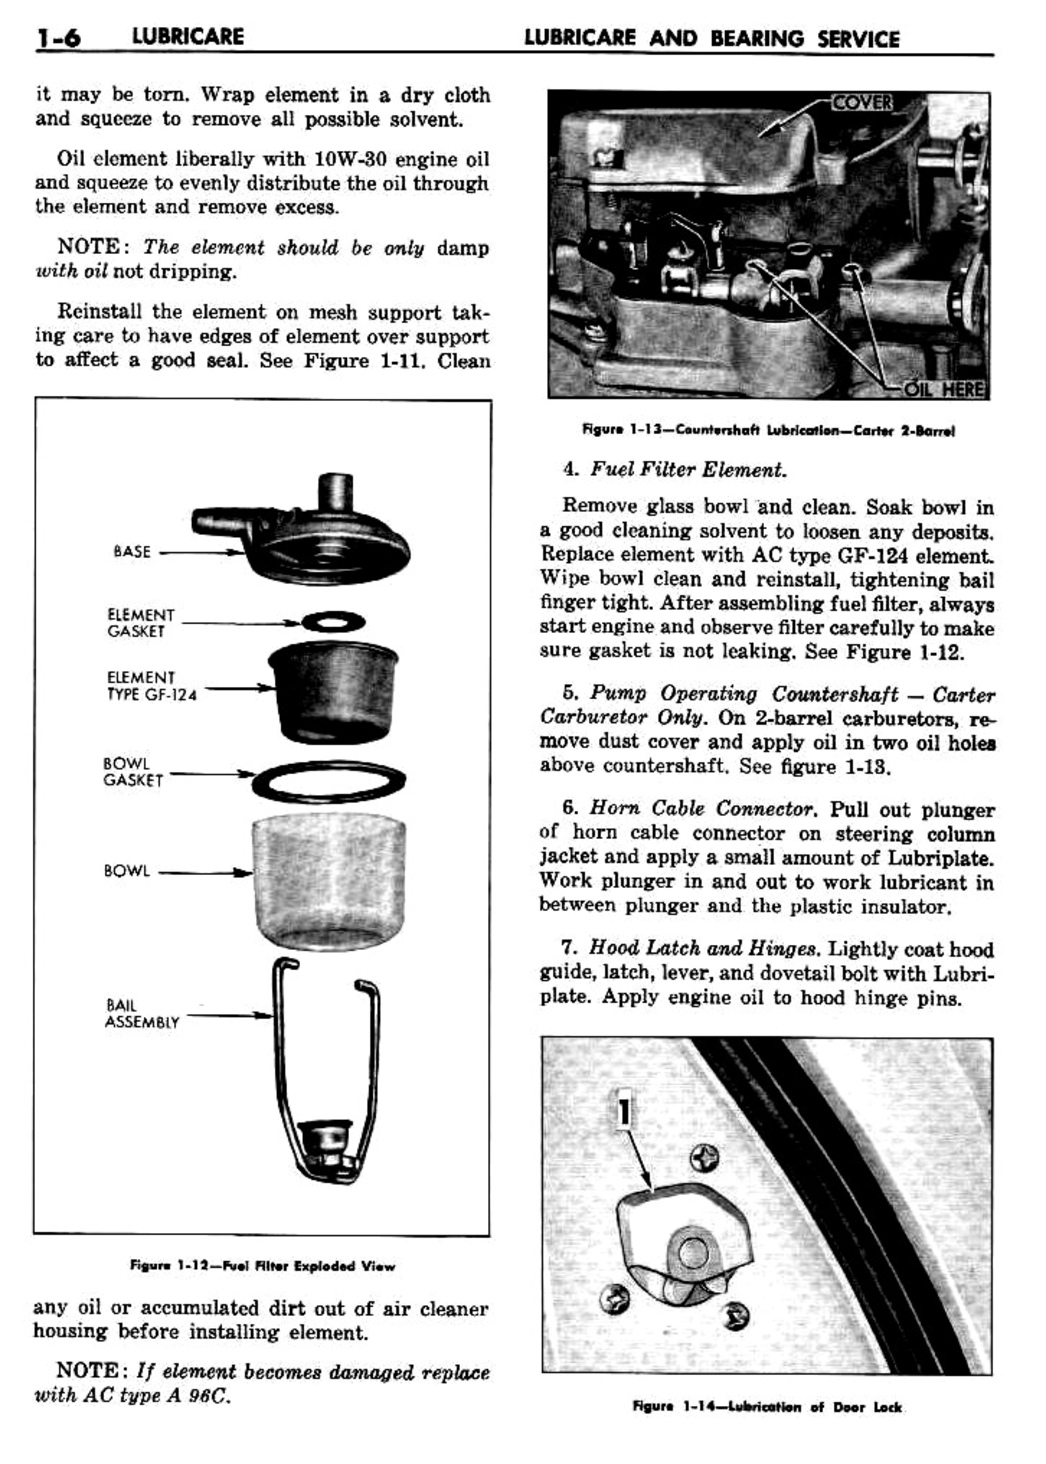 n_02 1960 Buick Shop Manual - Lubricare-006-006.jpg